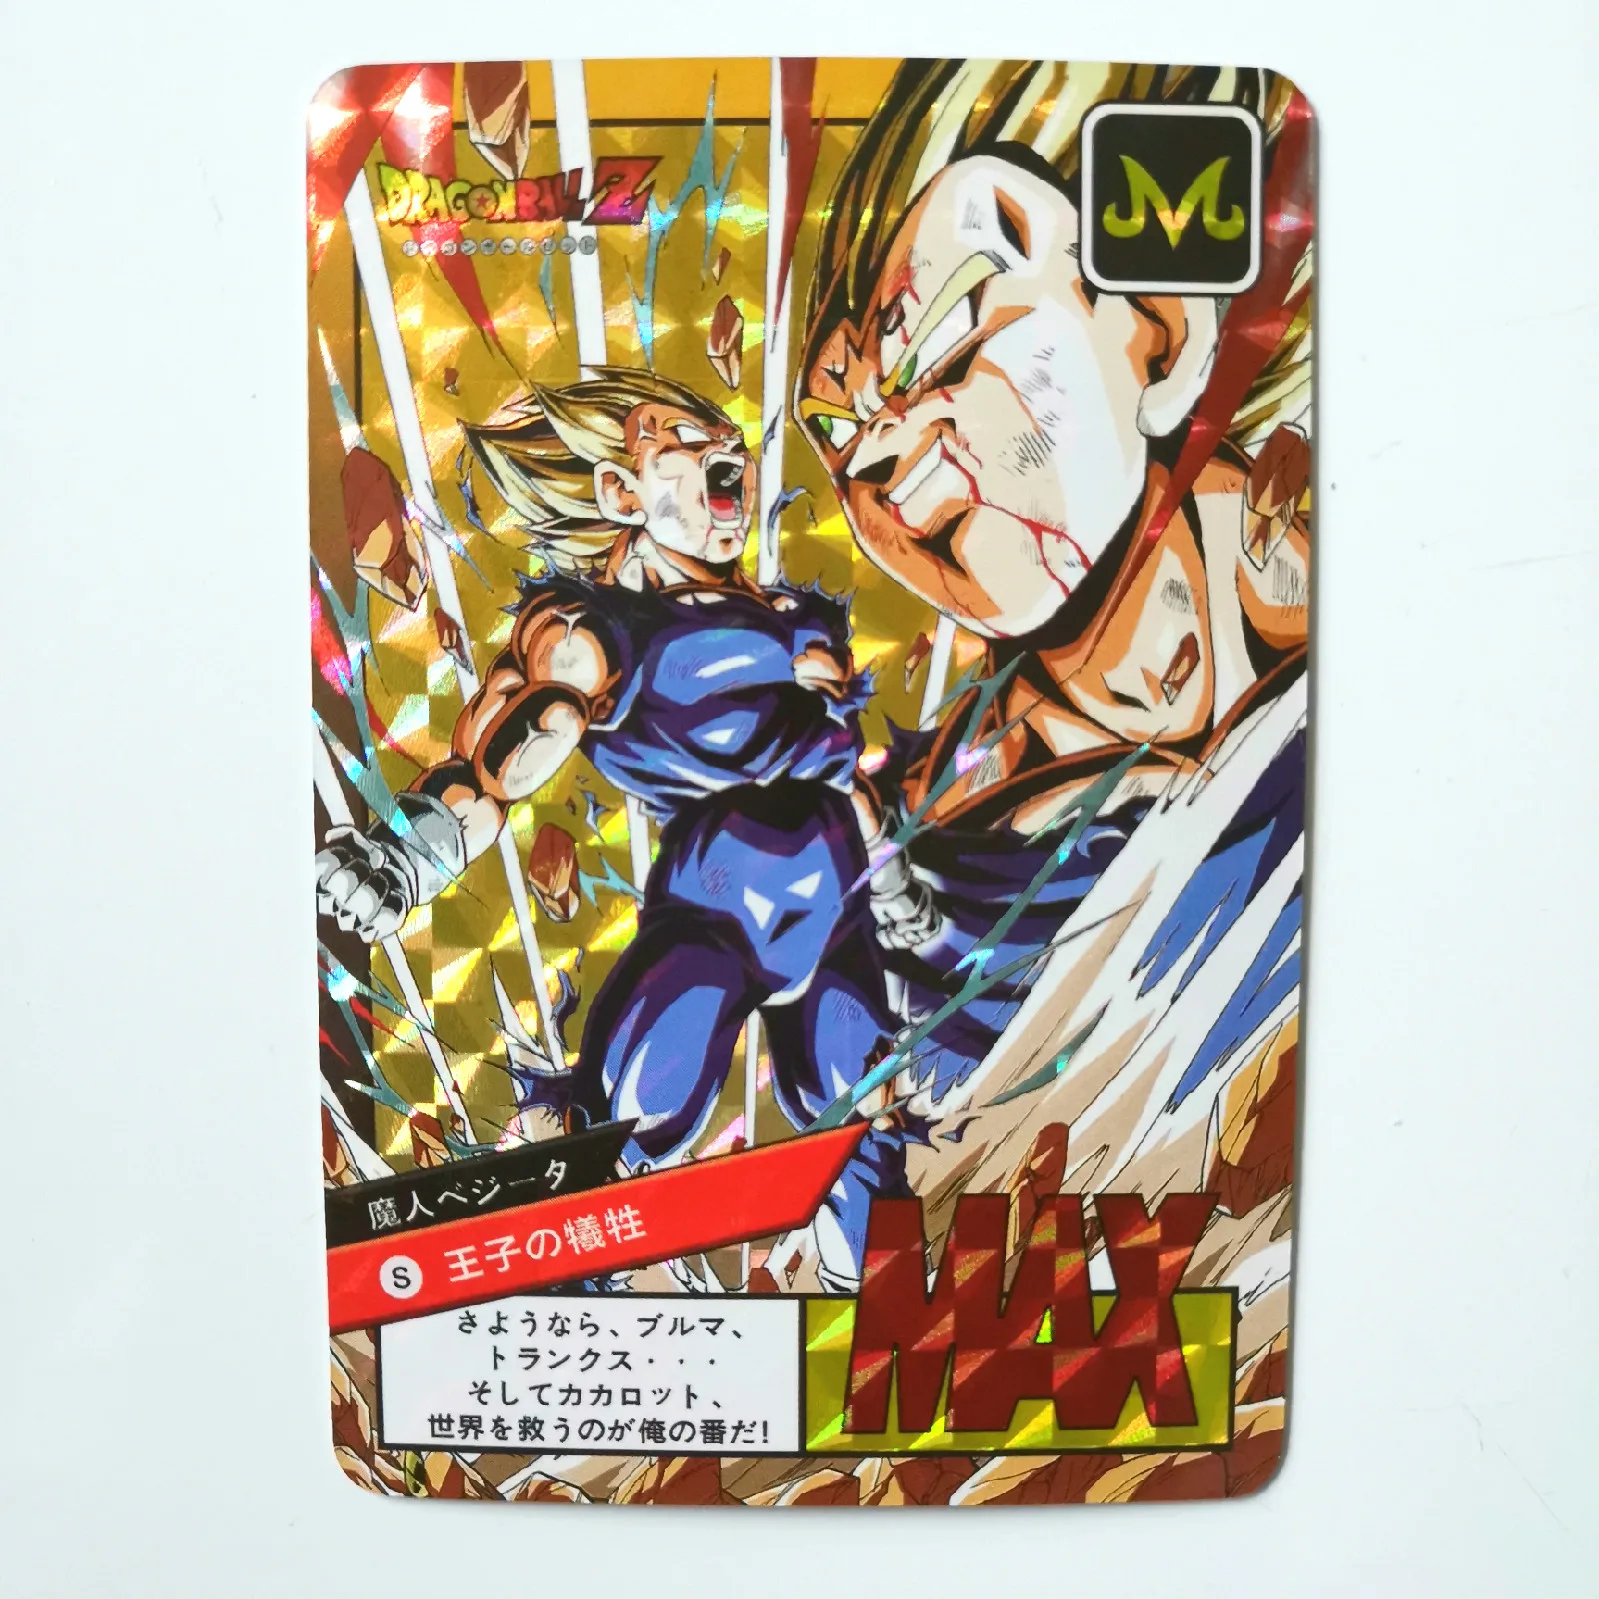 Горячая штамповка Dragon Ball Z Instinct Goku Vegeta Супер Герои битва карточная игра Коллекция аниме-открытки - Цвет: mo fangge